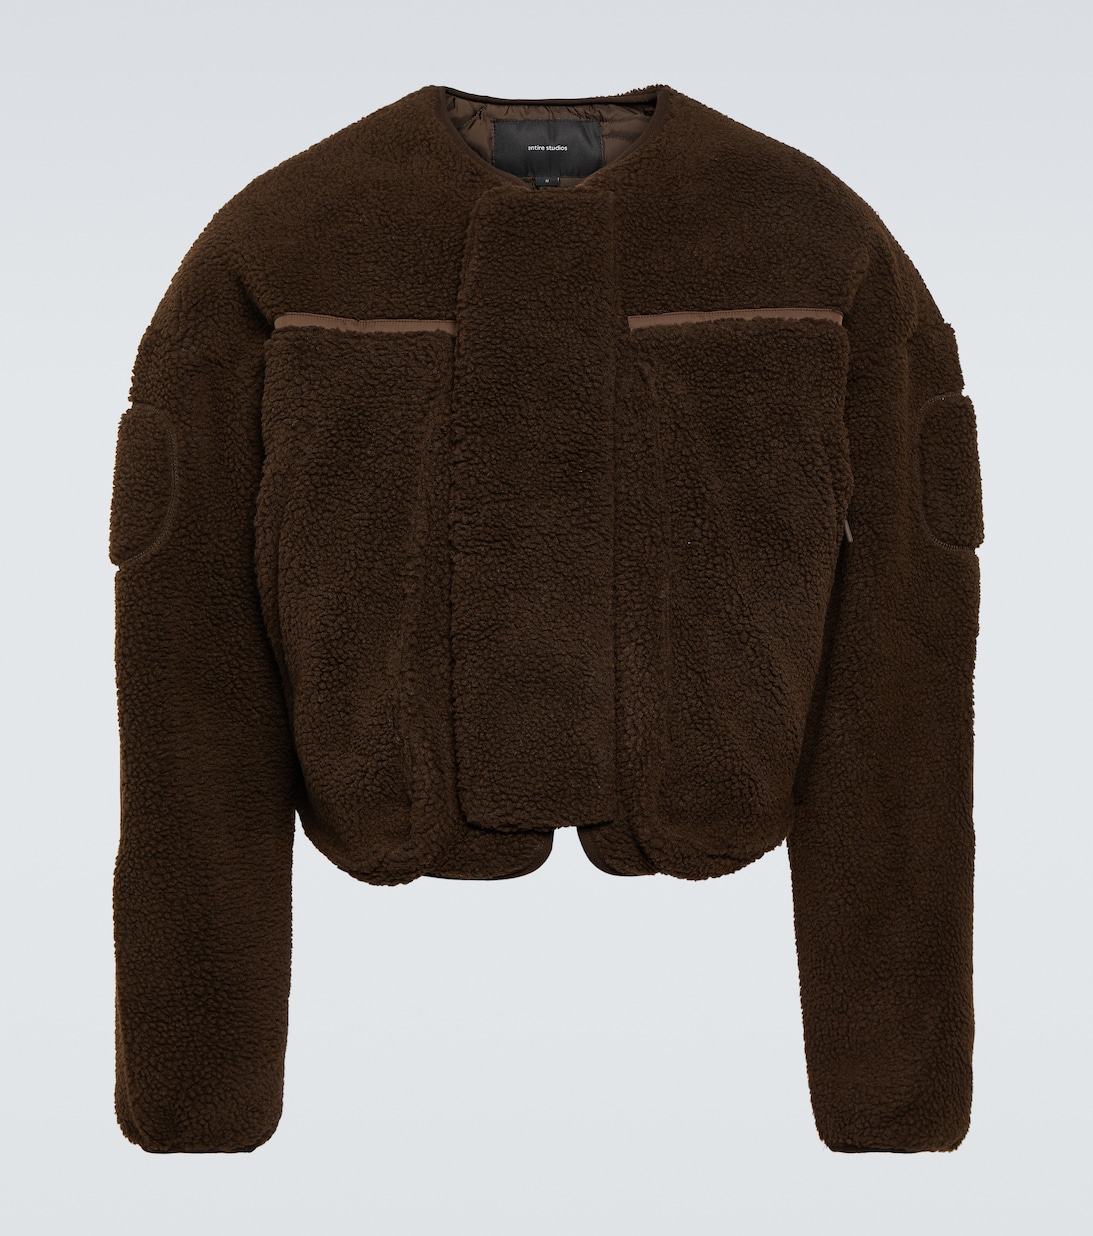 Куртка из искусственной овчины Entire Studios, коричневый куртка из искусственной овчины в клетку zara коричневый